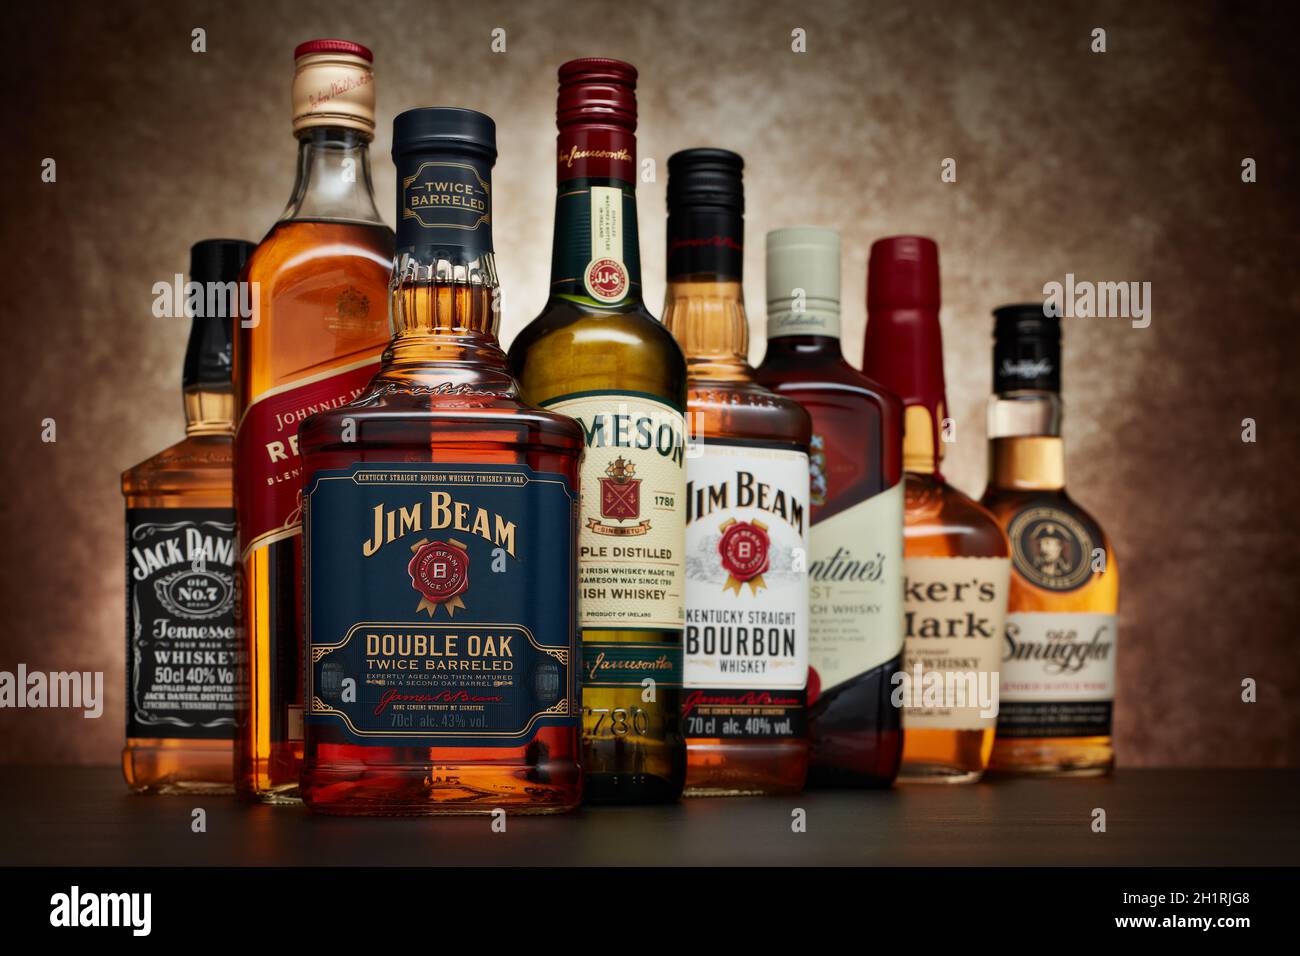 St.Petersburg, Russland - April 2020 - Flasche Jim Beam Bourbon Whiskey (zweifach Eiche mit Barreled) auf dem Hintergrund anderer beliebter Whiskymarken. Stockfoto